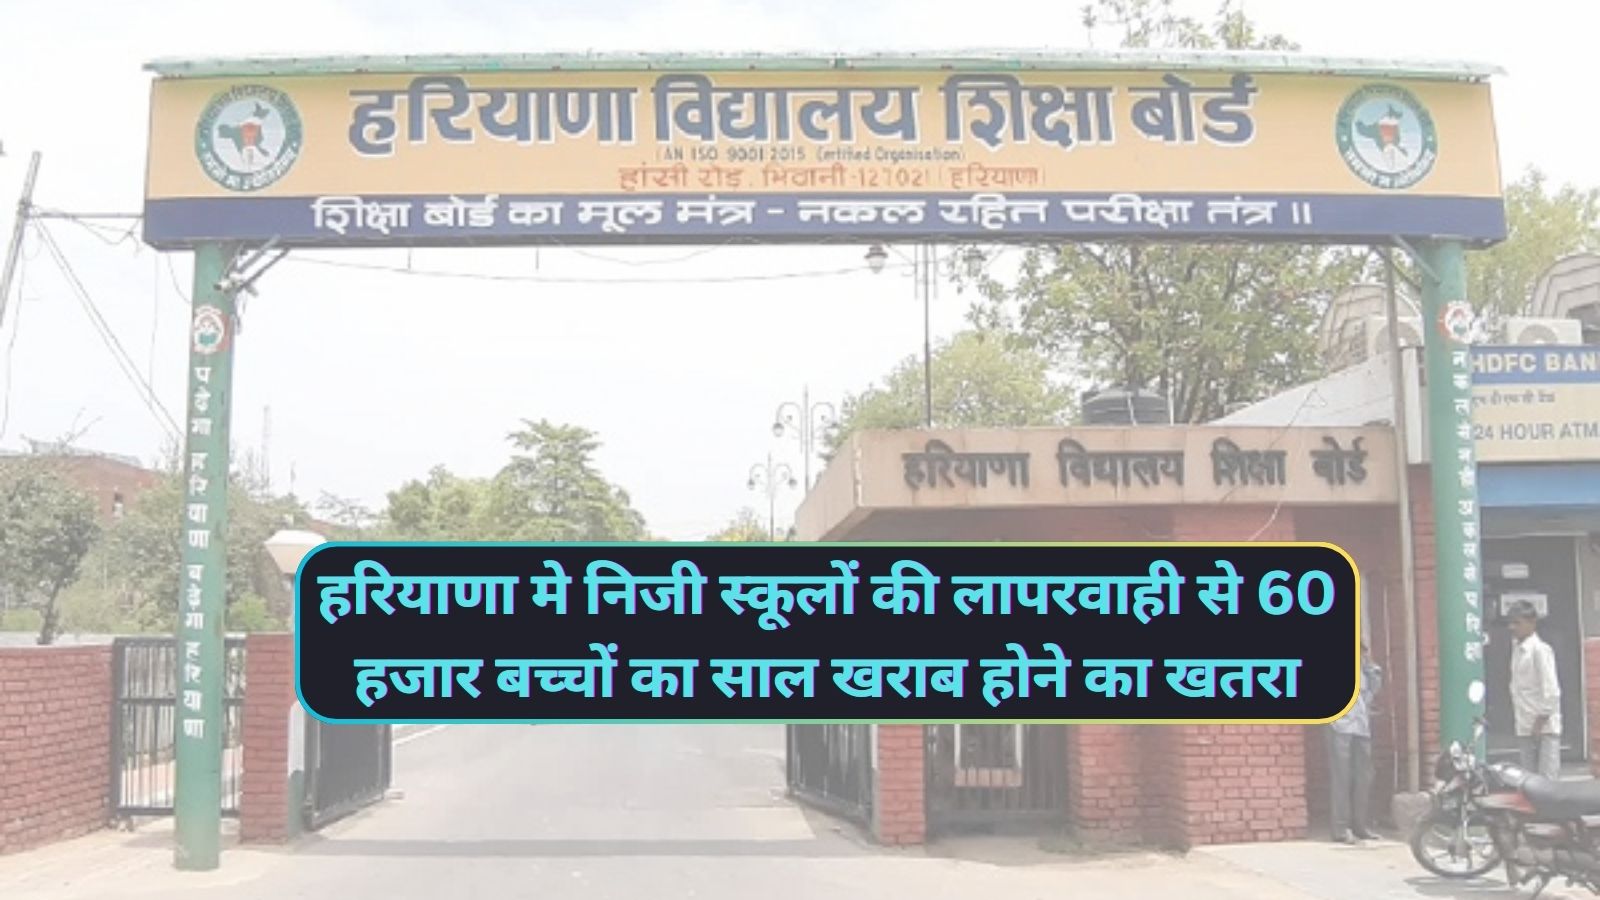 Haryana News: हरियाणा मे निजी स्कूलों की लापरवाही से 60 हजार बच्चों का साल खराब होने का खतरा,